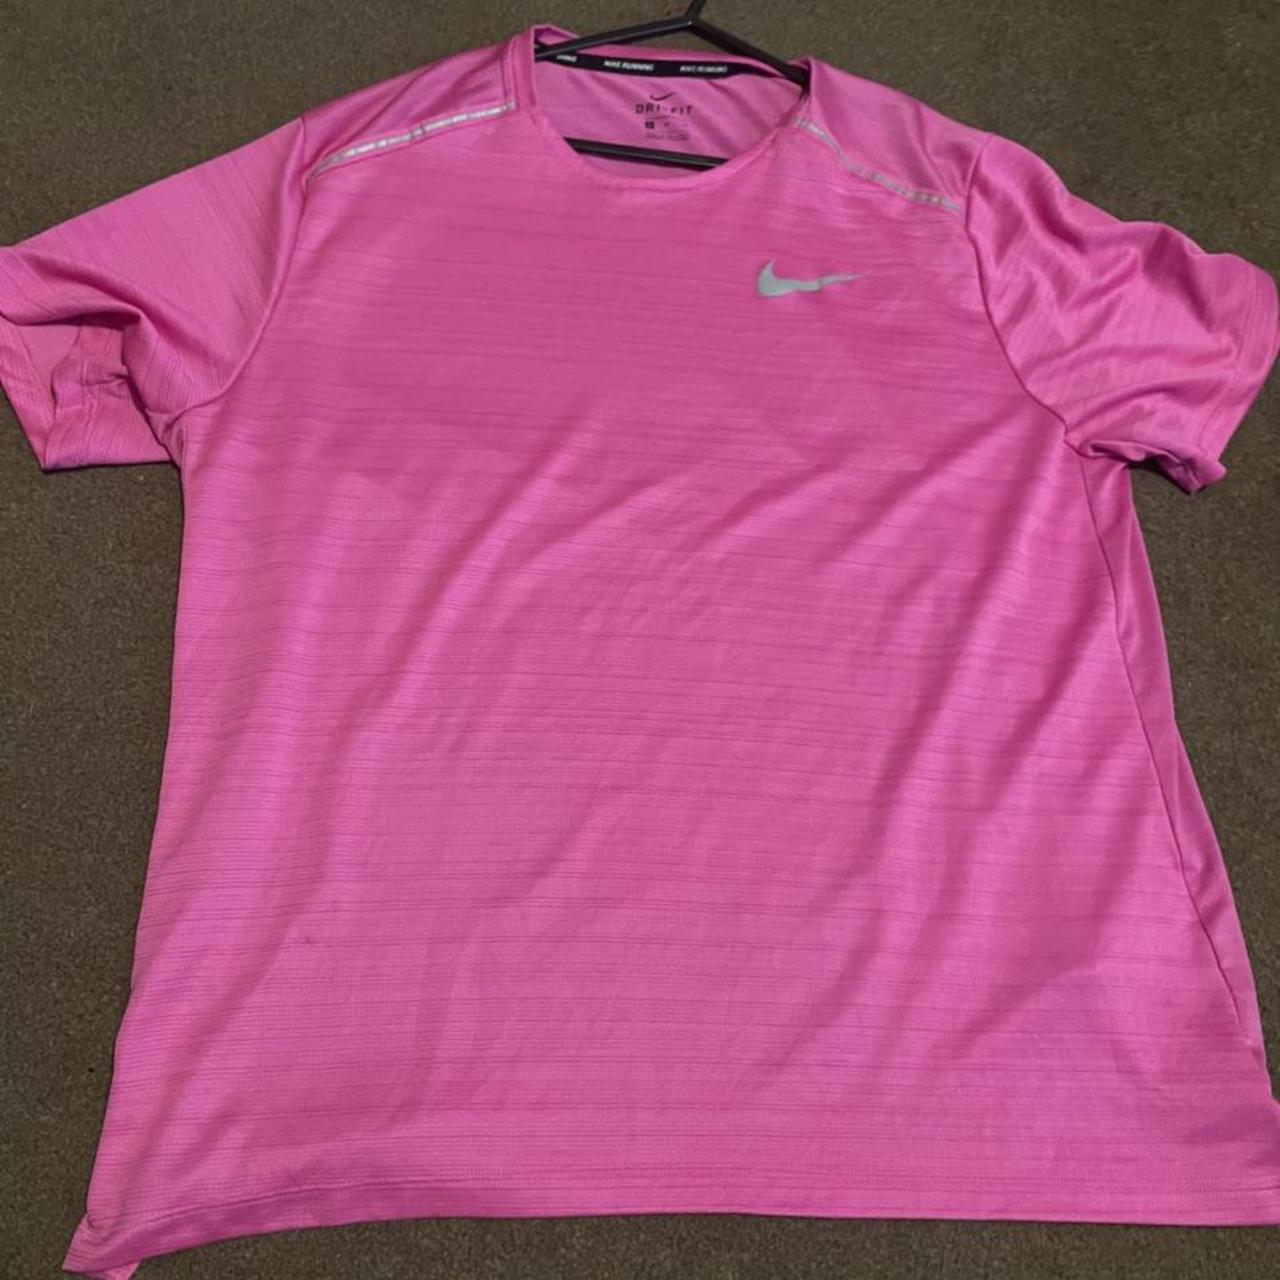 Nike Dri-Fit Baltimore Orioles T-Shirt Excellent - Depop